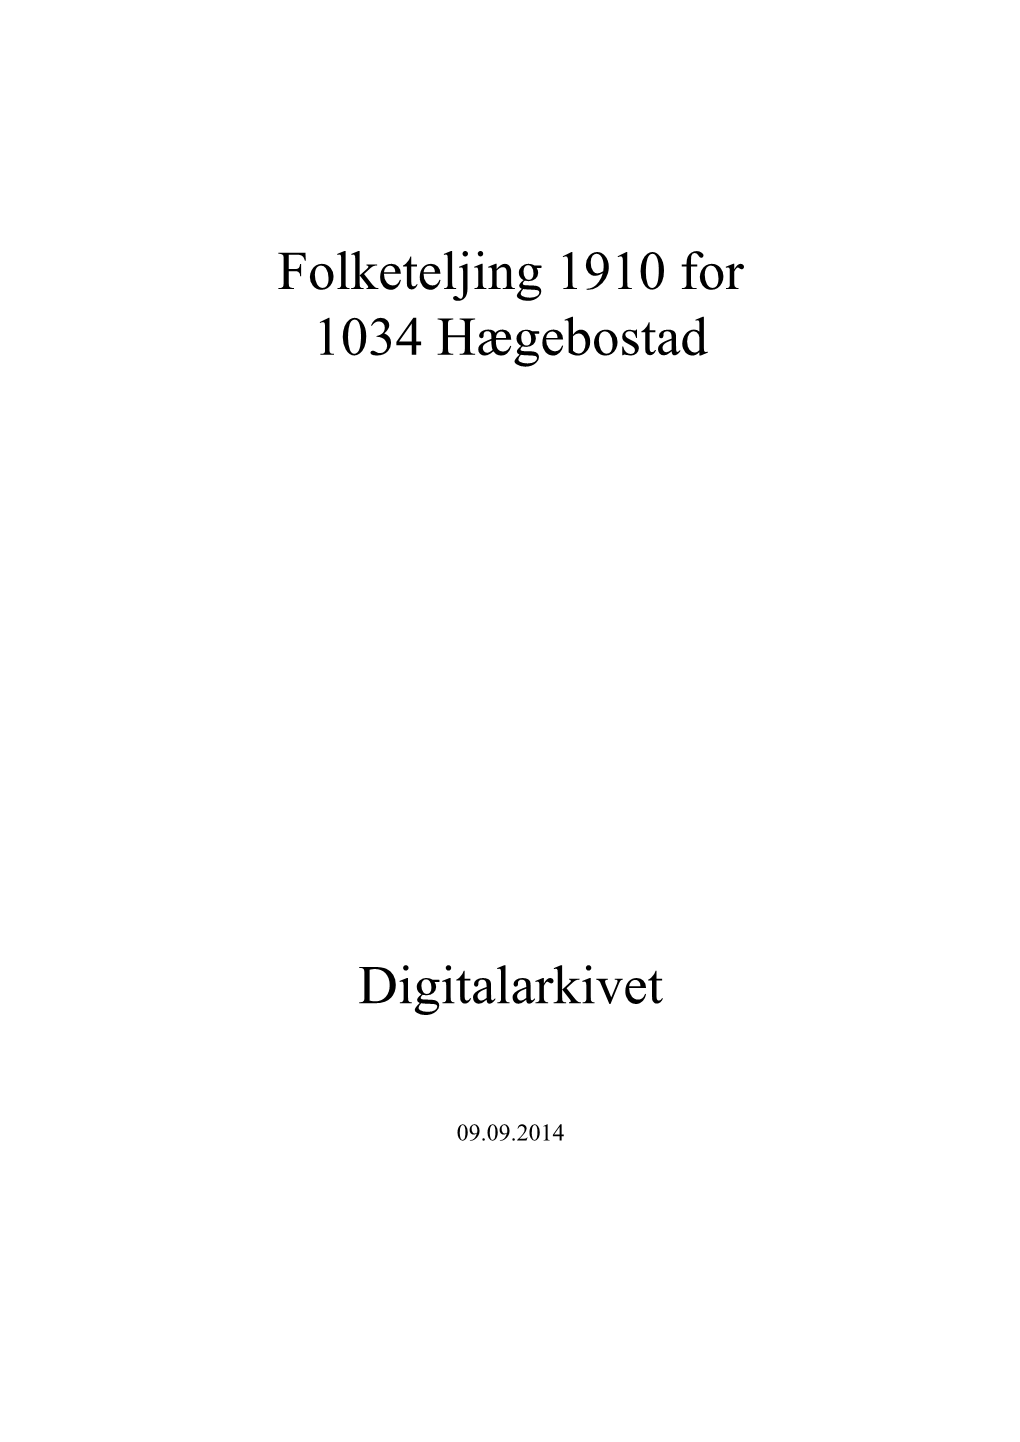 Folketeljing 1910 for 1034 Hægebostad Digitalarkivet